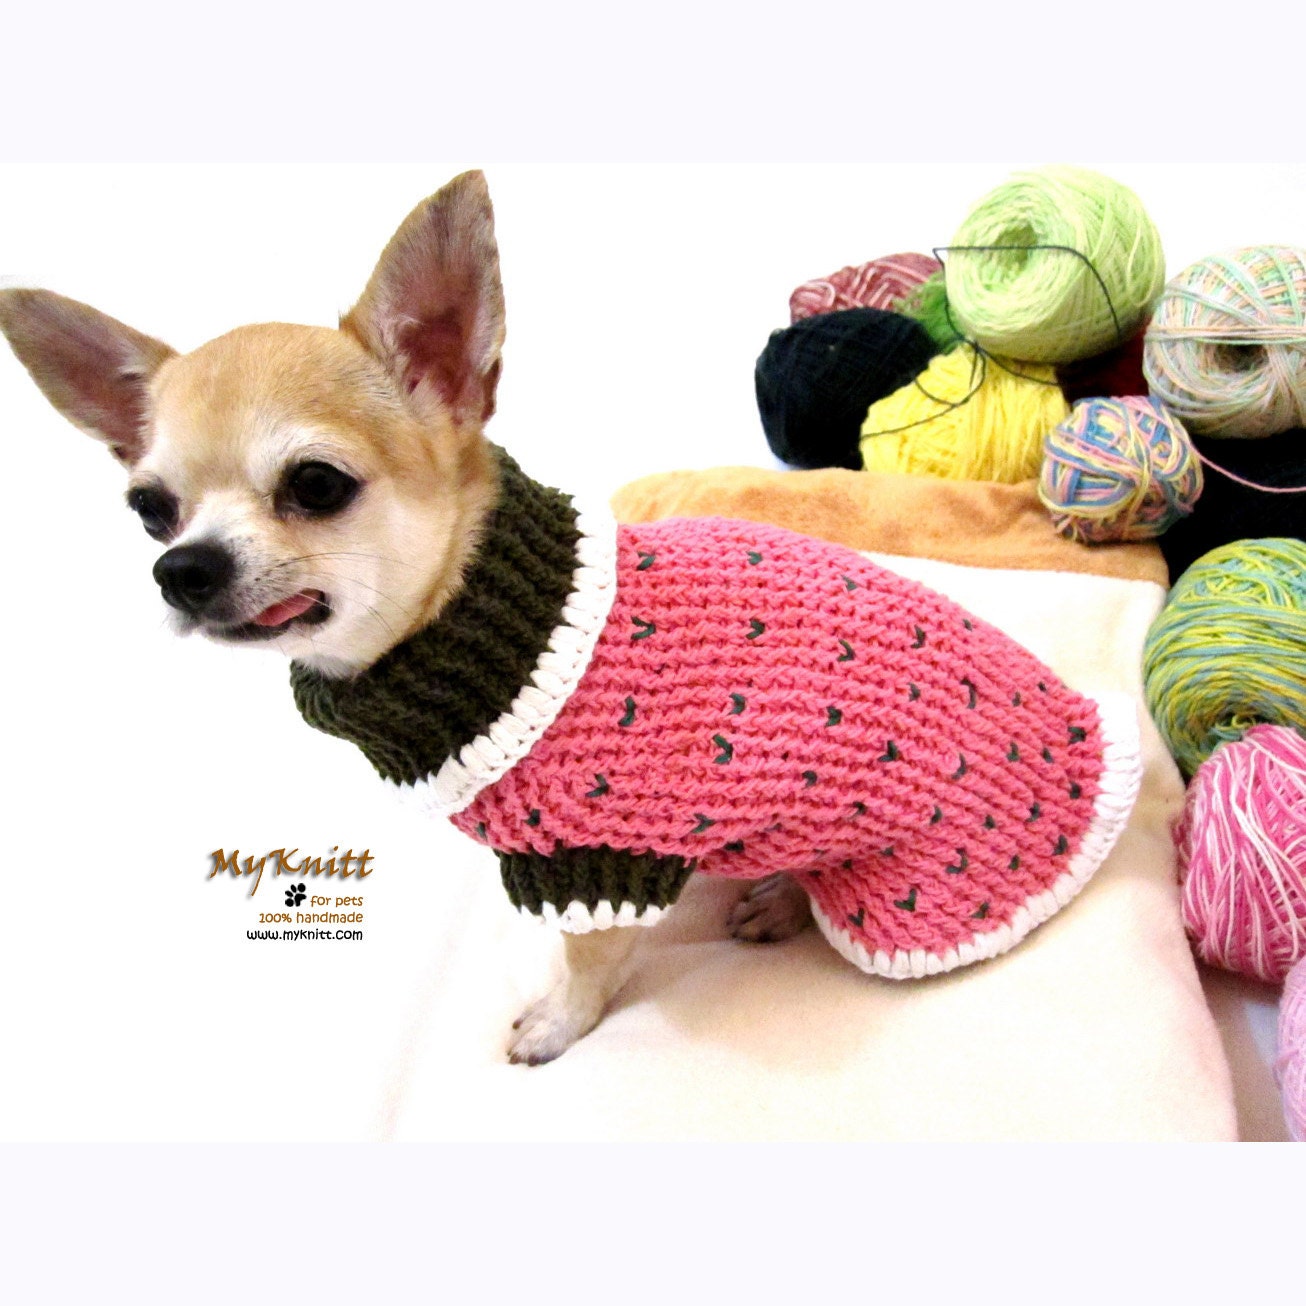 Strawberry Shortcake Dog Sweater Crochet Dog Clothes Dog | Etsy